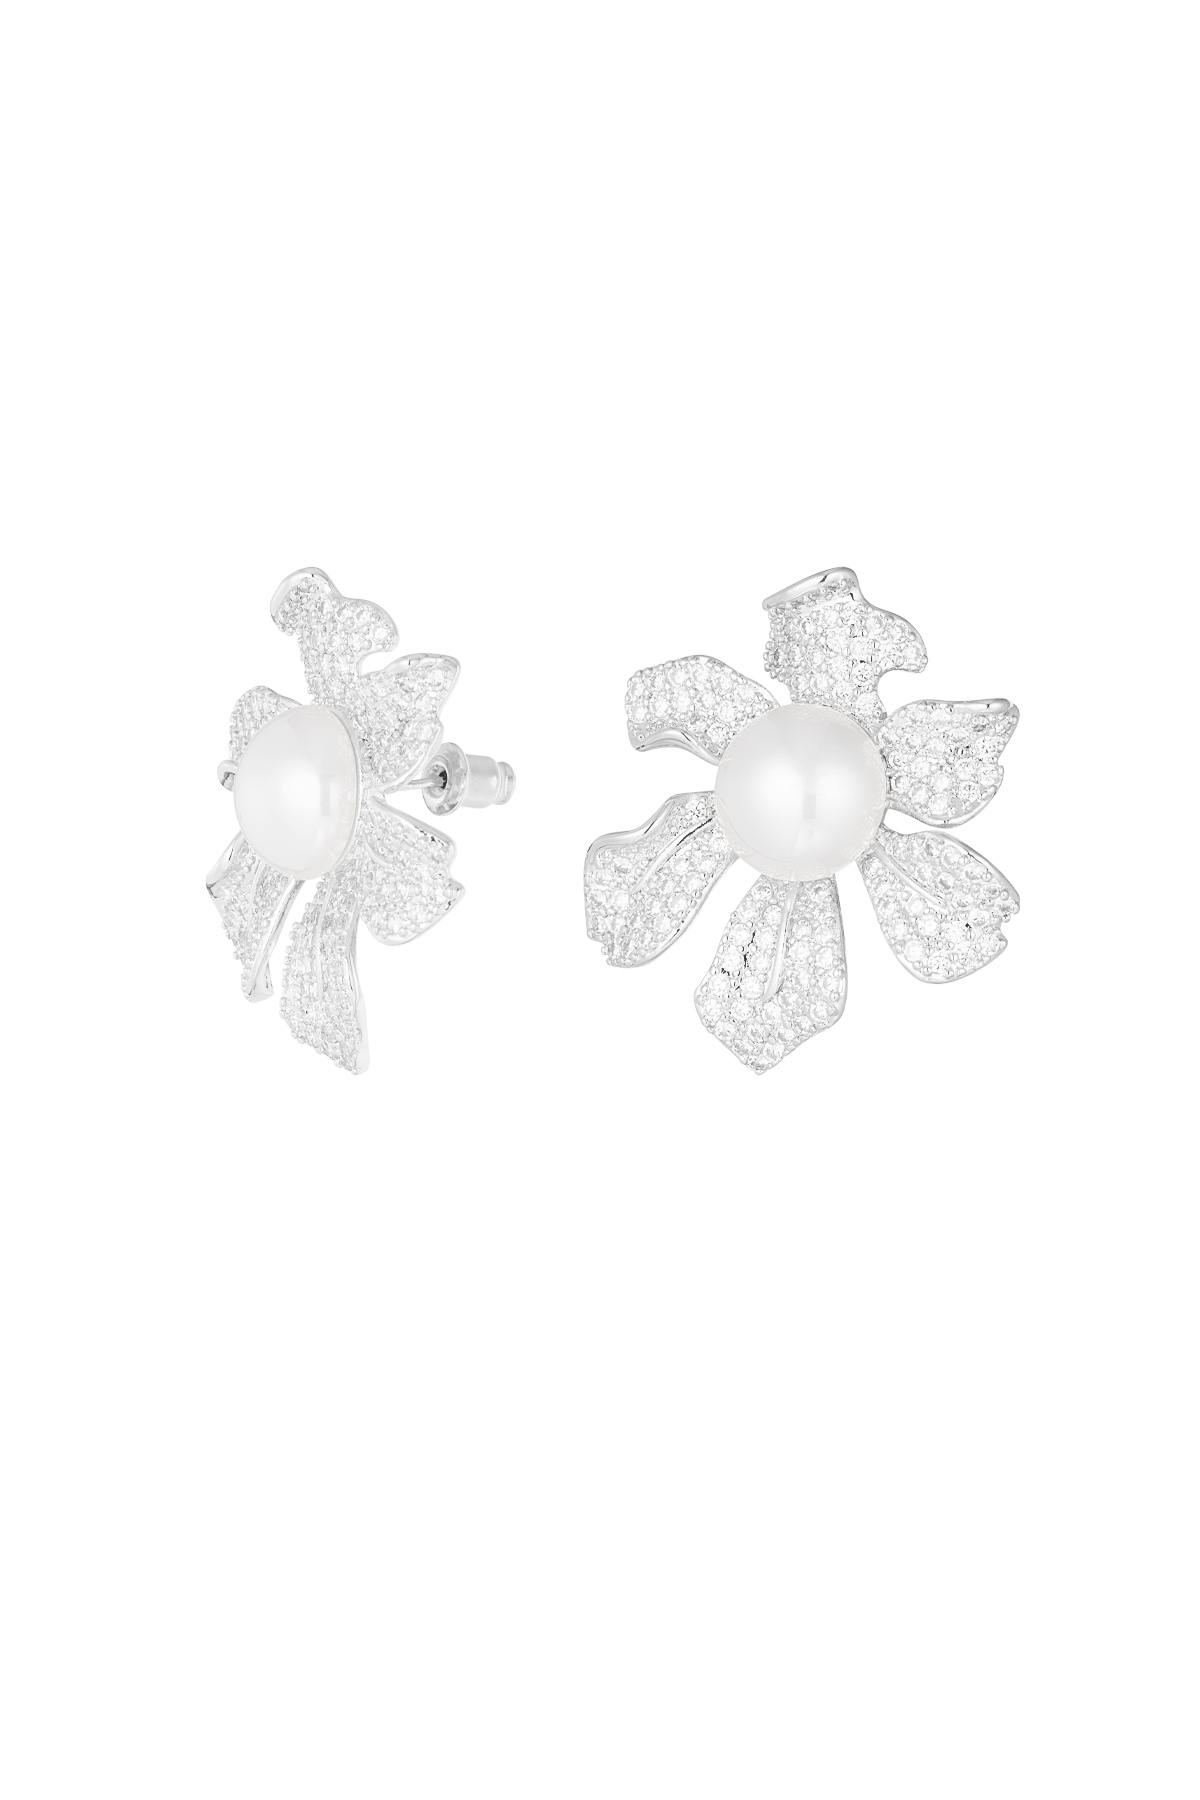 Boucles d'oreilles fleur scintillante perle argent - zircon cuivre 